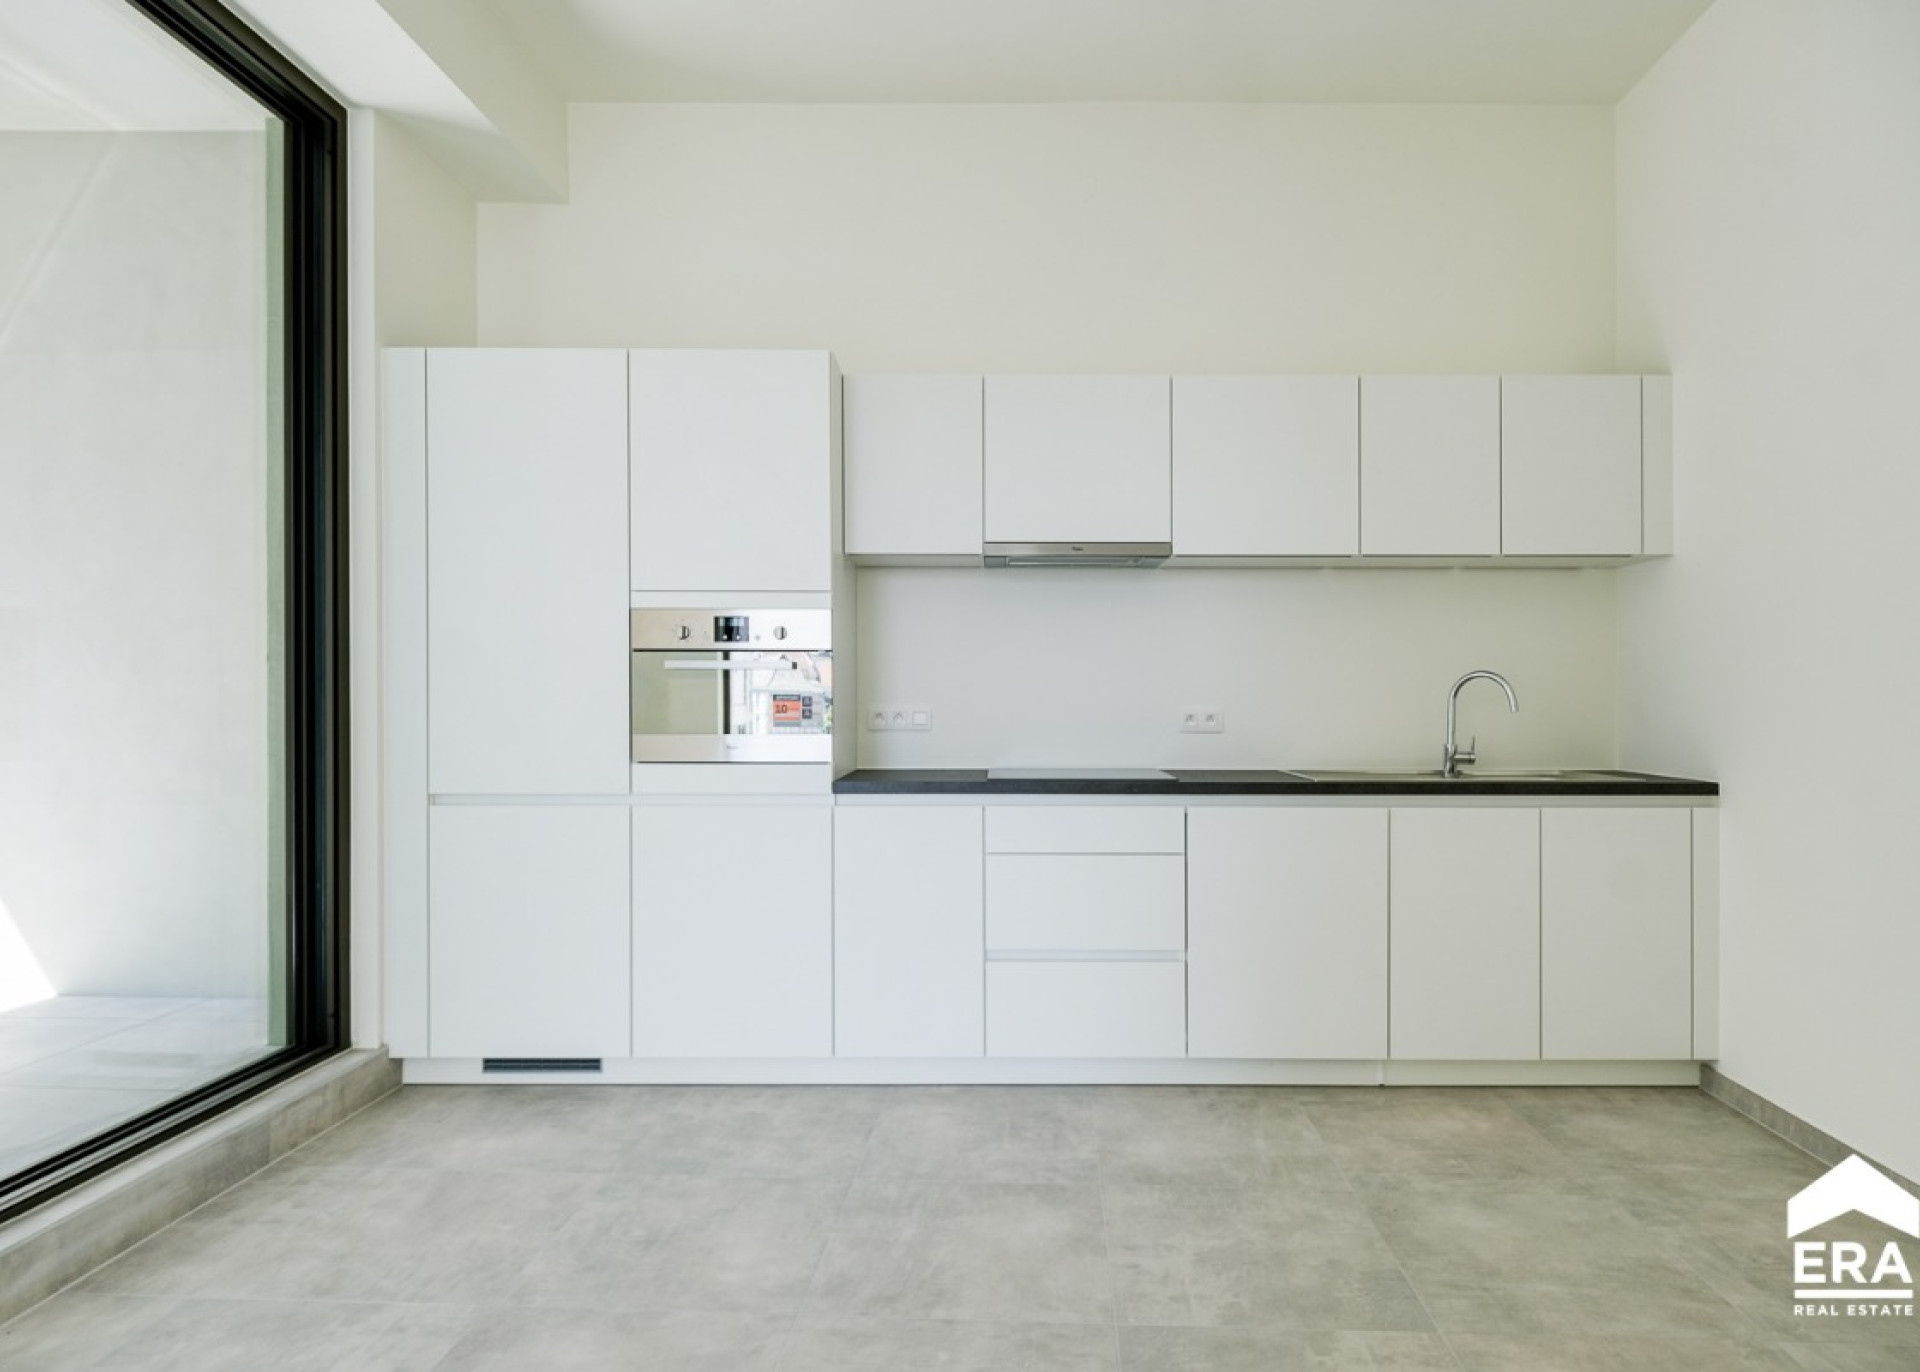 Verkopen - Nieuwbouw appartement - Hasselt - Immo - ERA Nobis(7).jpg